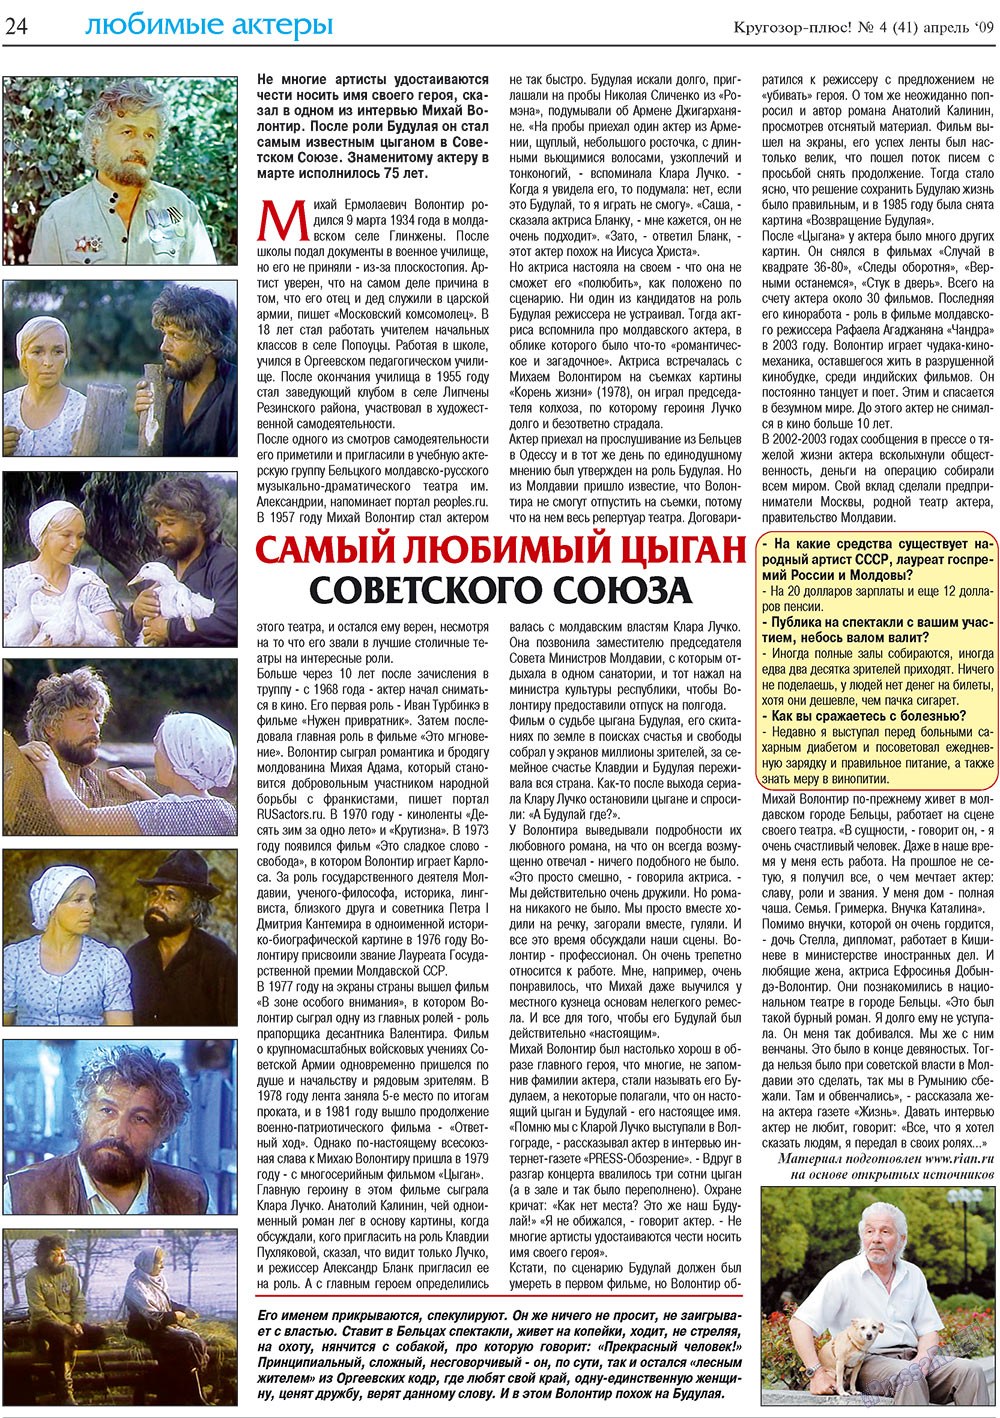 Кругозор плюс!, газета. 2009 №4 стр.24